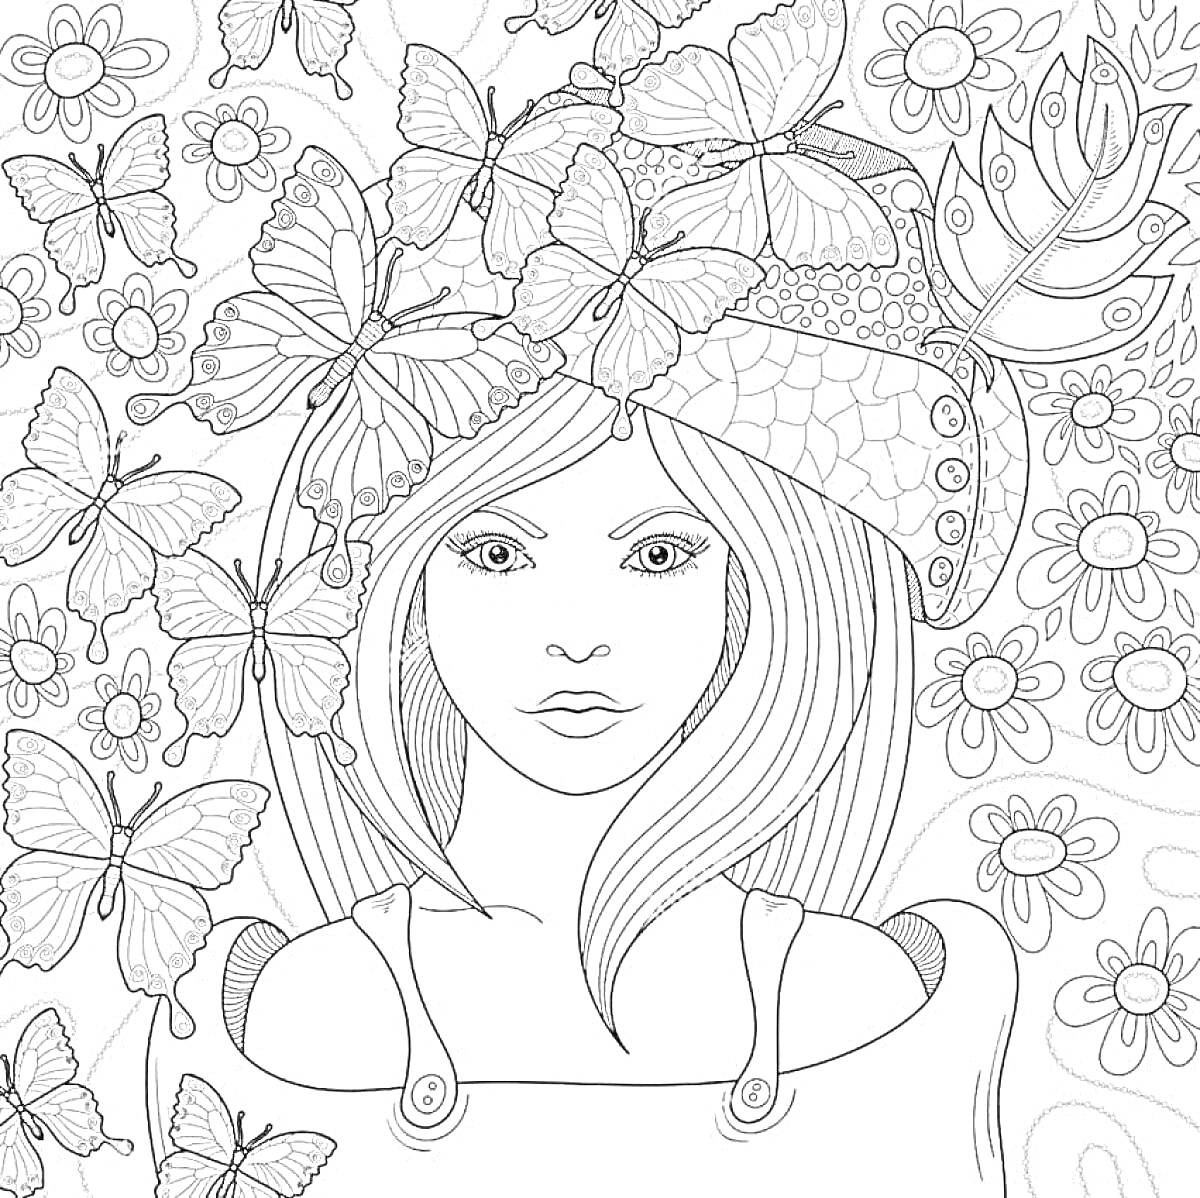 Раскраска Портрет девушки с длинными волосами, окружённой бабочками и цветами